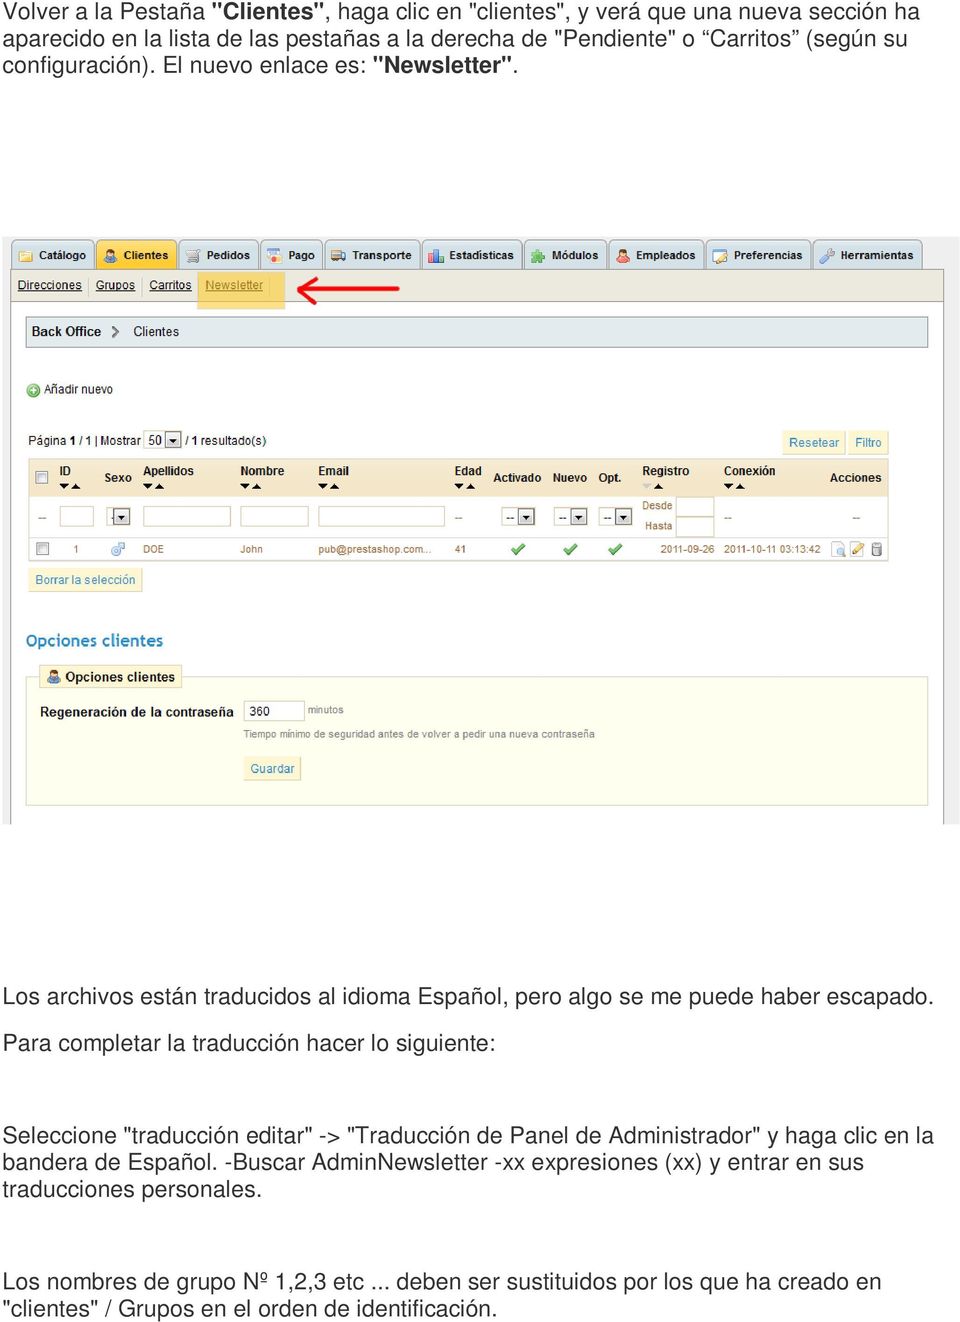 Para completar la traducción hacer lo siguiente: Seleccione "traducción editar" -> "Traducción de Panel de Administrador" y haga clic en la bandera de Español.